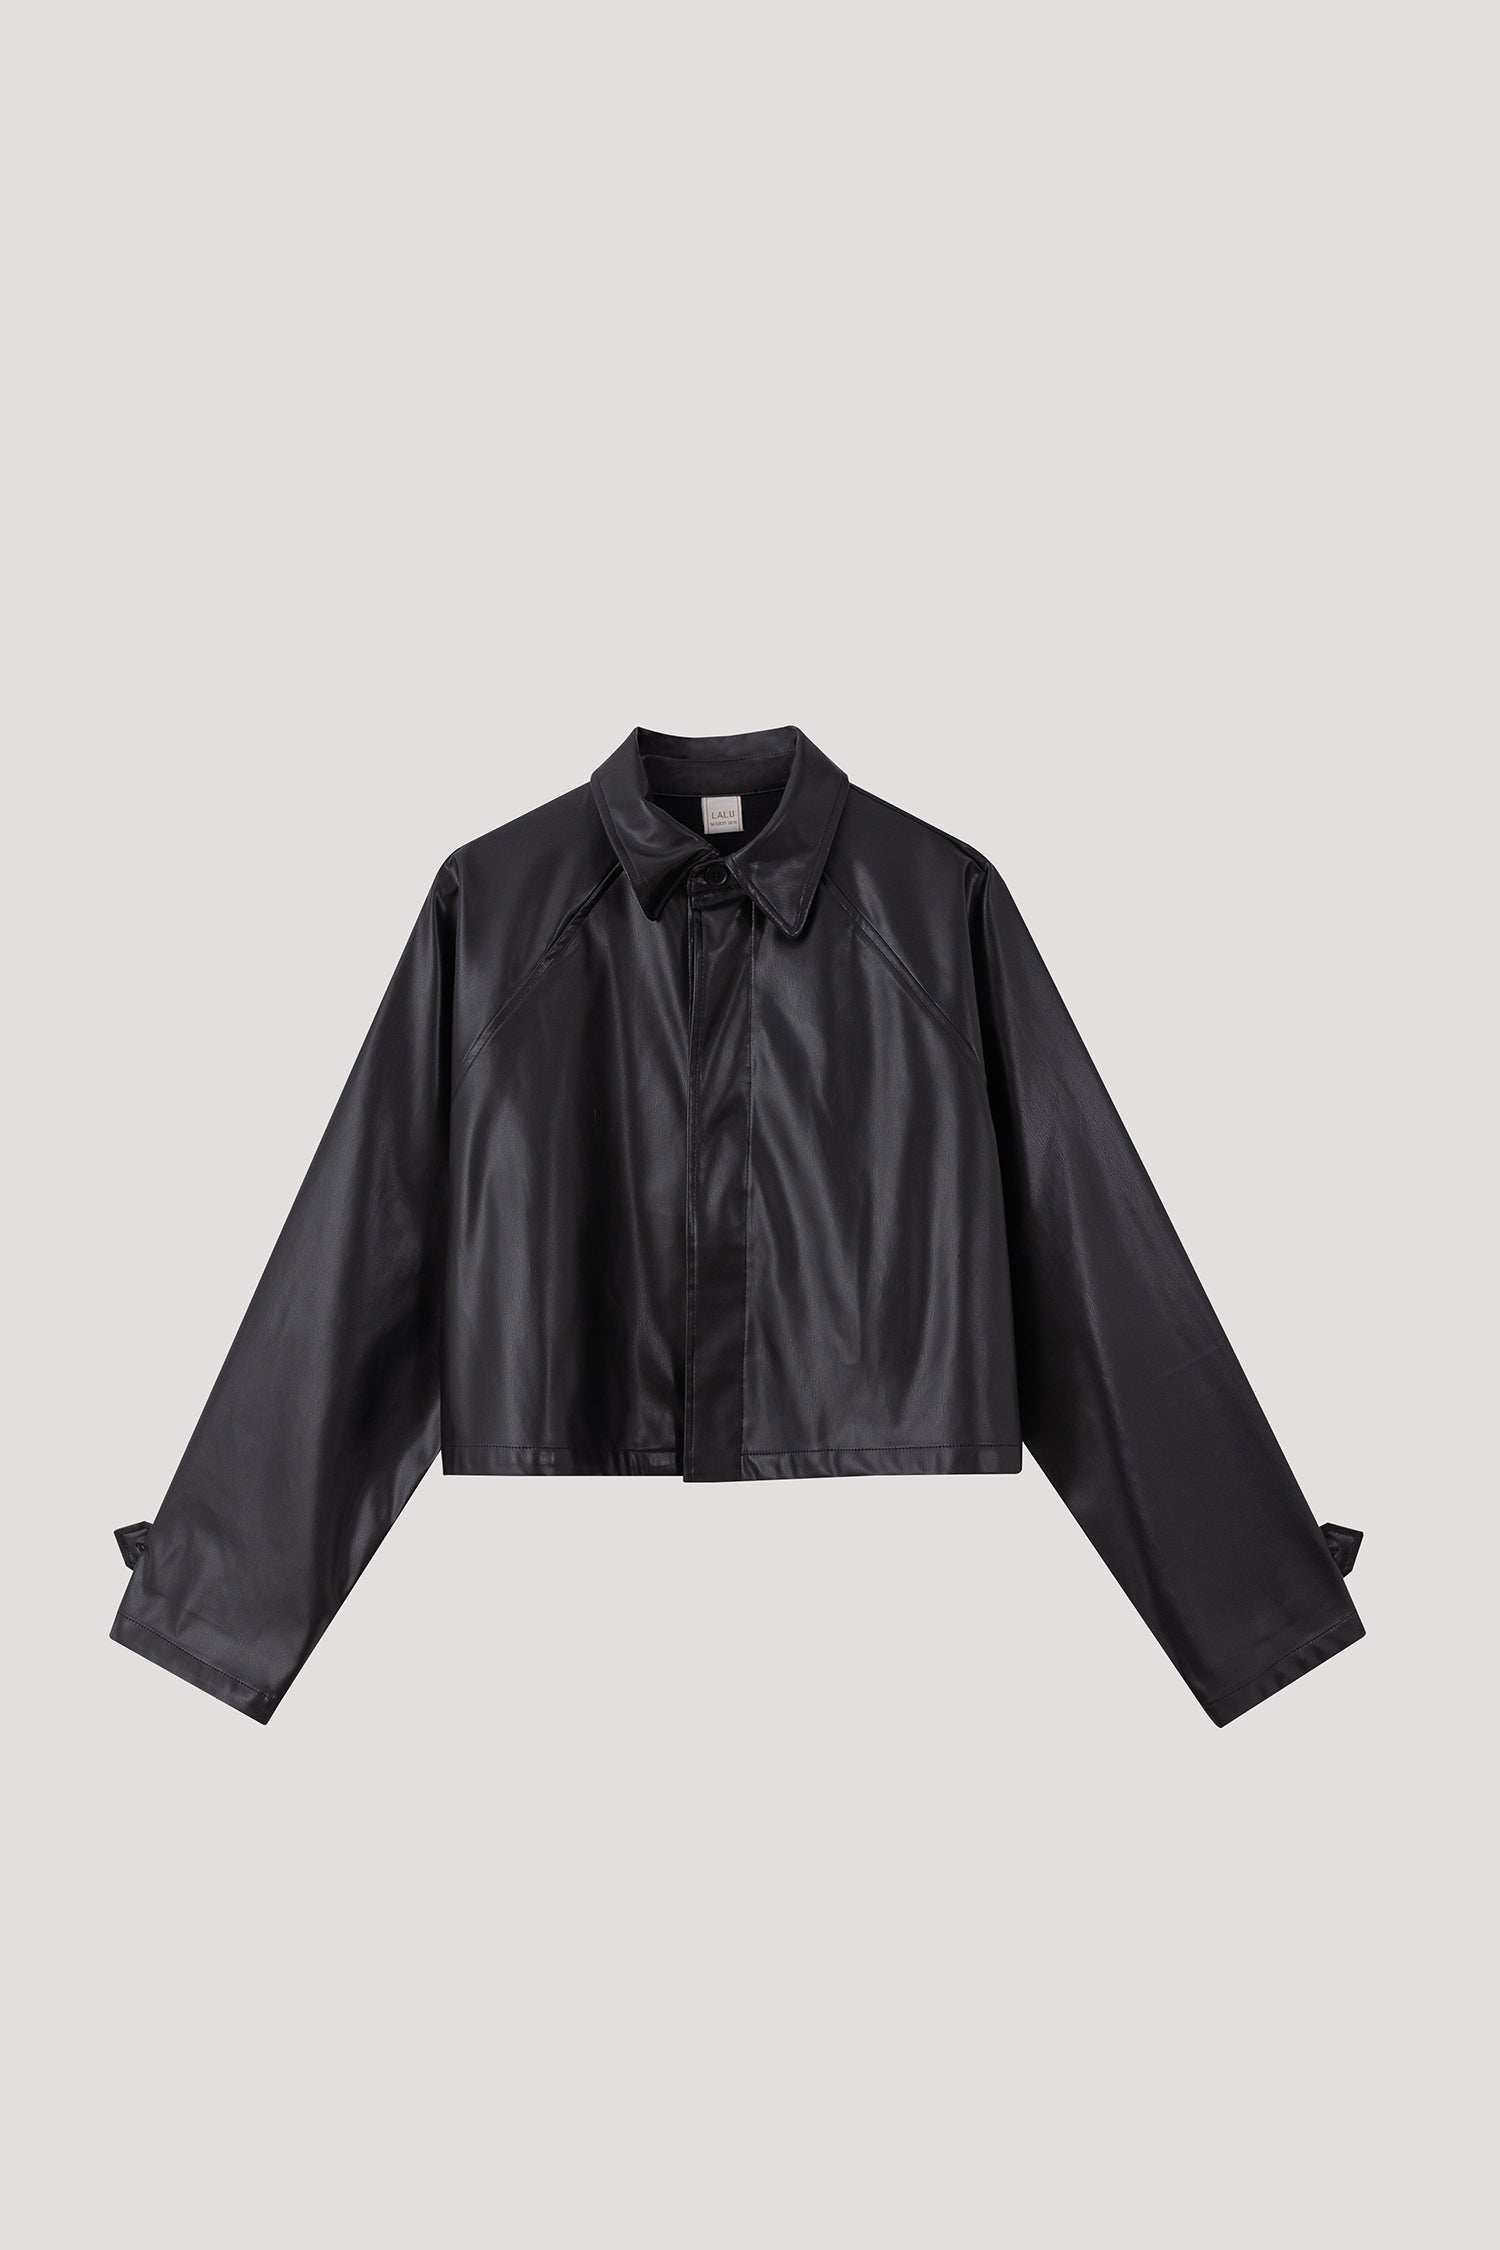 Raglan Sleeve Leather Jacket